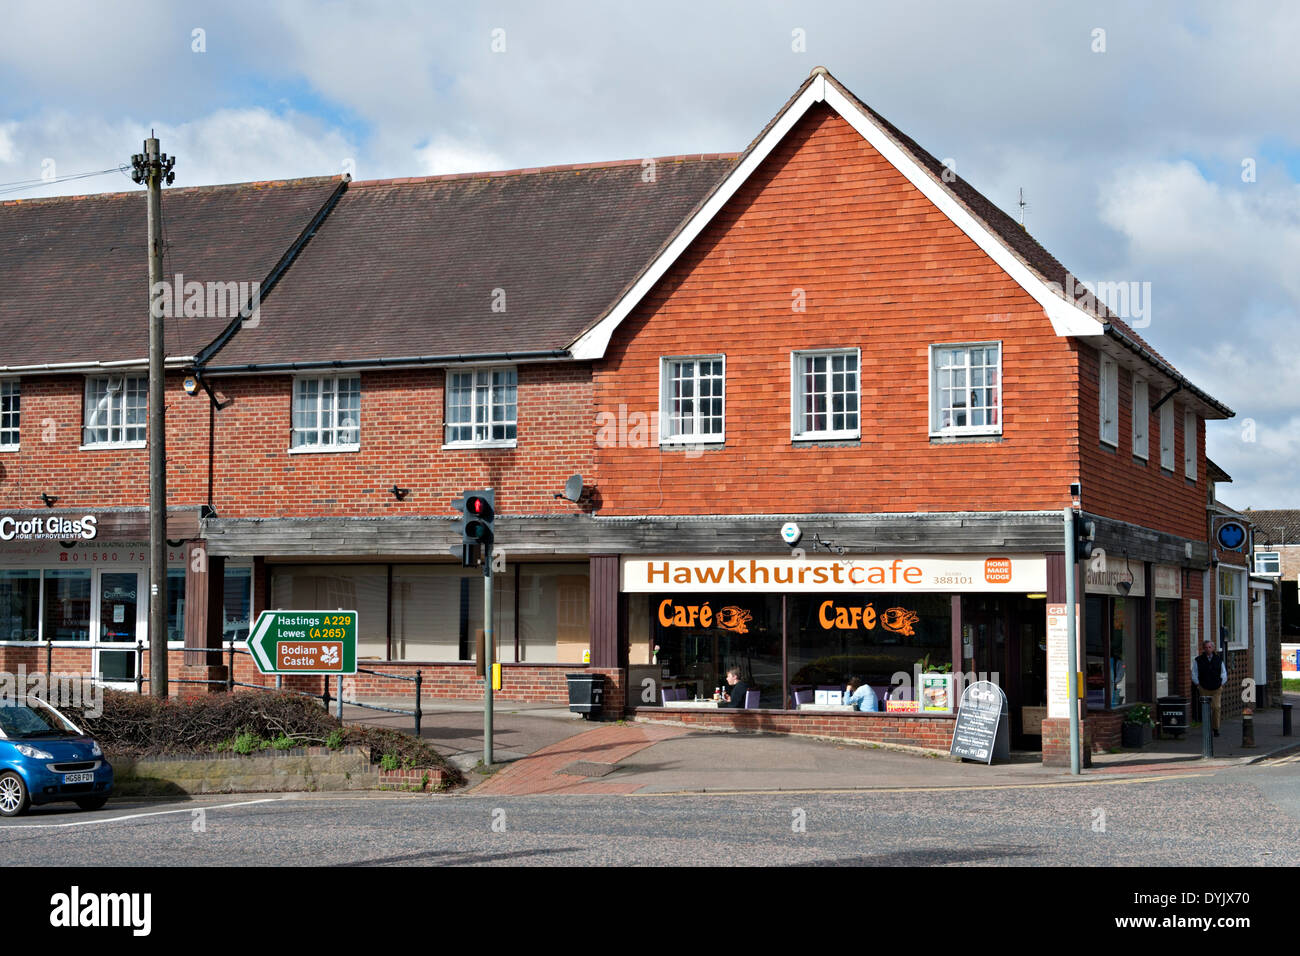 Cafe al crocevia nel villaggio Hawkhurst, Kent, Regno Unito Foto Stock